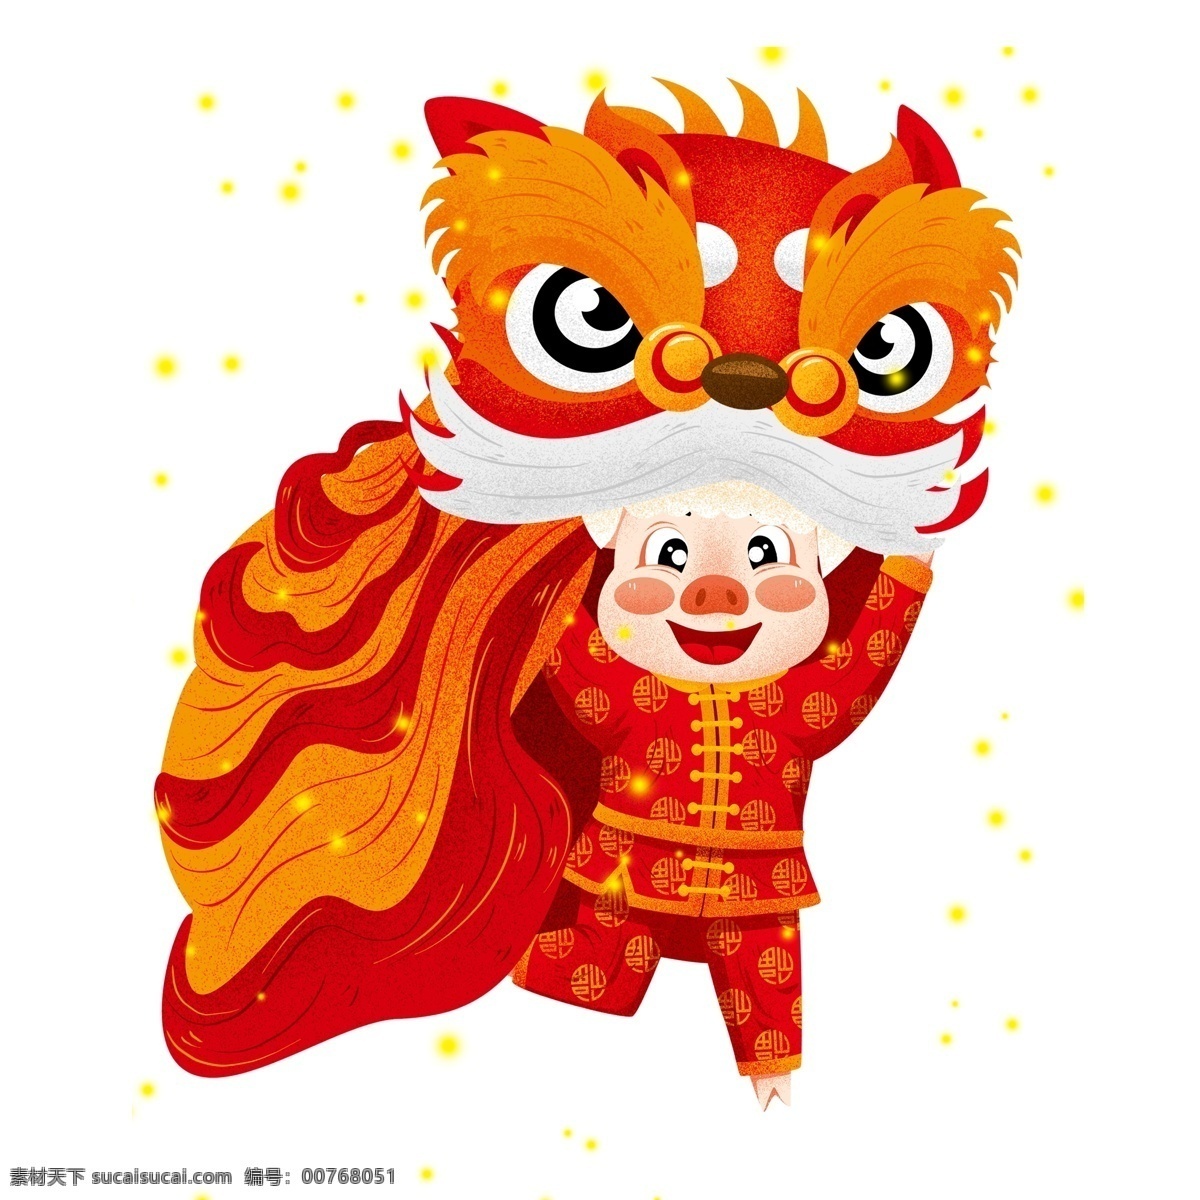 传统 中国 风 舞狮 舞龙 猪 喜庆 春节 插画 传统文化 中国风 卡通 新年 猪年 2019年 过年 小猪形象 猪年形象 中国年